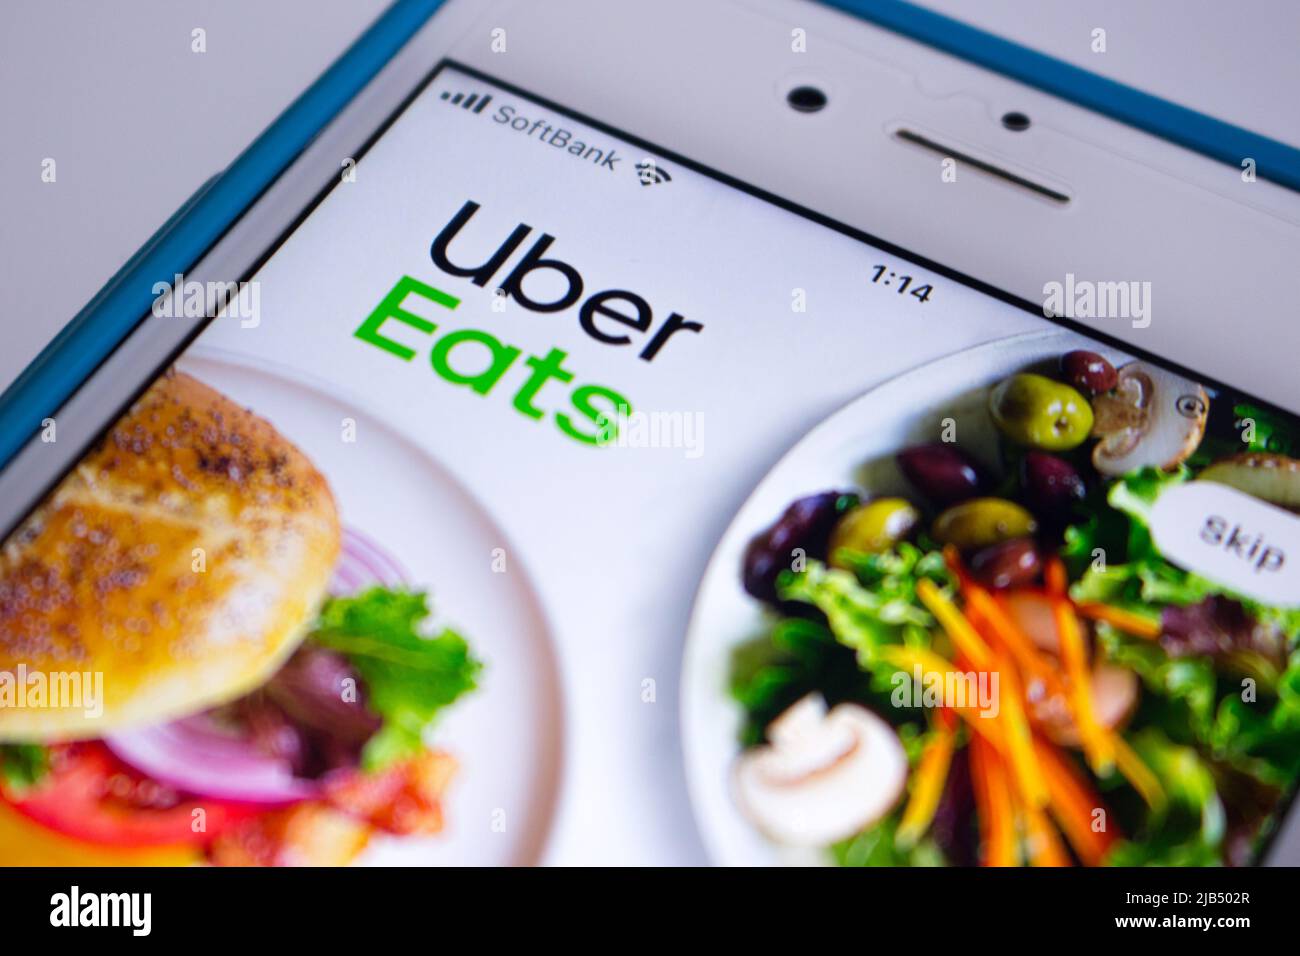 Kumamoto, Giappone - Maggio 7 2020 : primo piano del logo Uber eat, una piattaforma di ordinazione e consegna di cibo online statunitense lanciata da Uber, nella sua app sullo schermo dell'iPhone Foto Stock